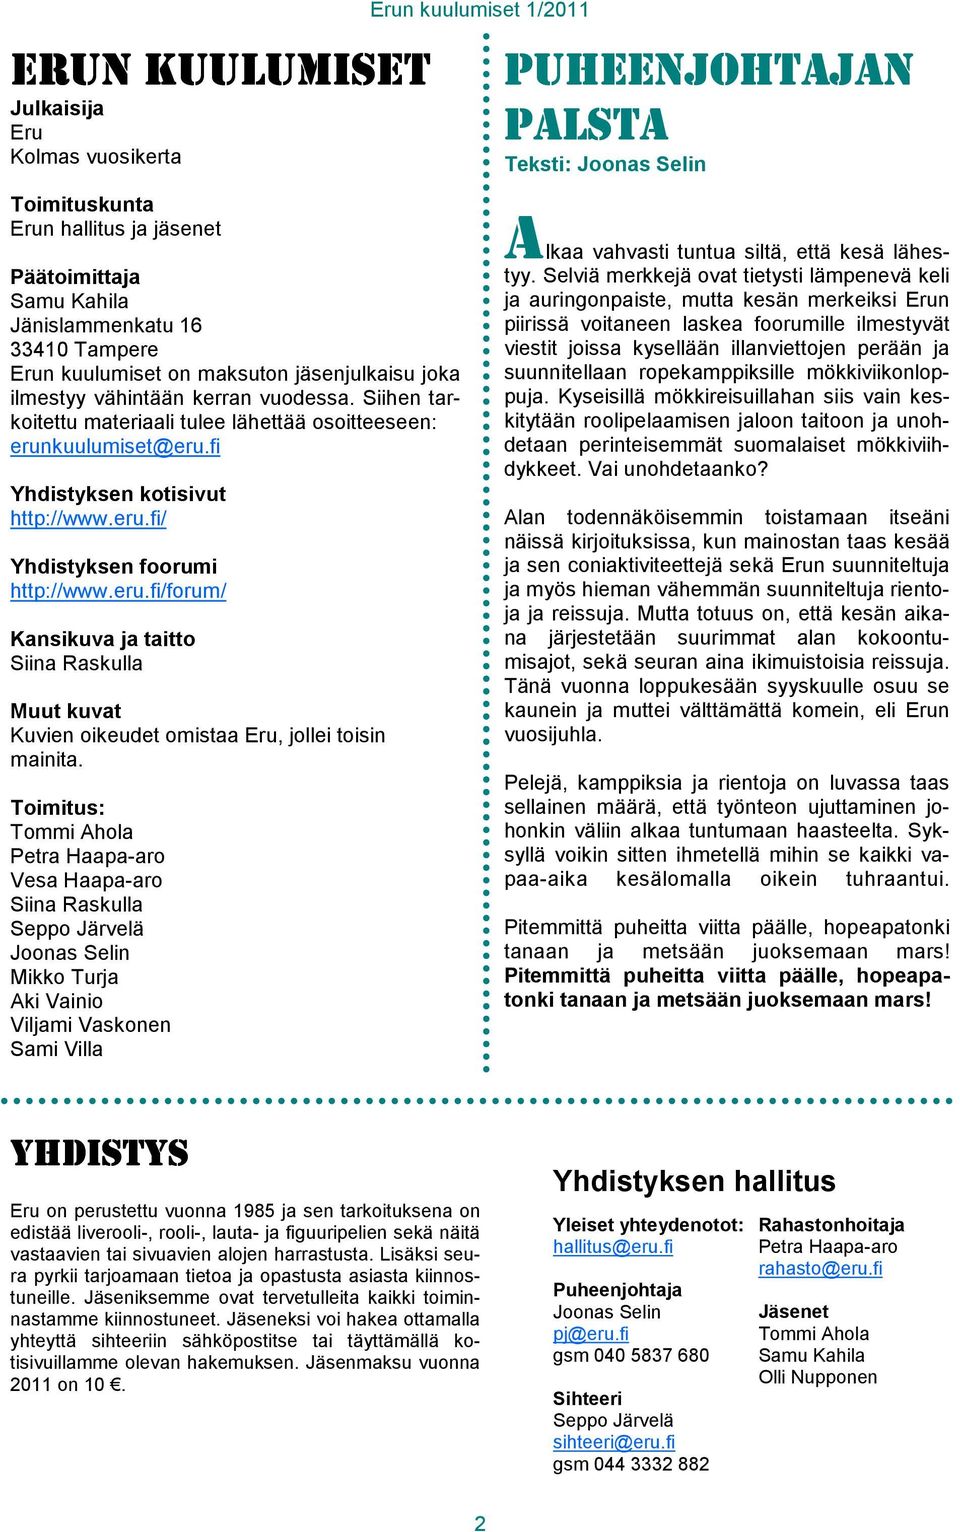 fi Yhdistyksen kotisivut http://www.eru.fi/ Yhdistyksen foorumi http://www.eru.fi/forum/ Kansikuva ja taitto Siina Raskulla Muut kuvat Kuvien oikeudet omistaa Eru, jollei toisin mainita.